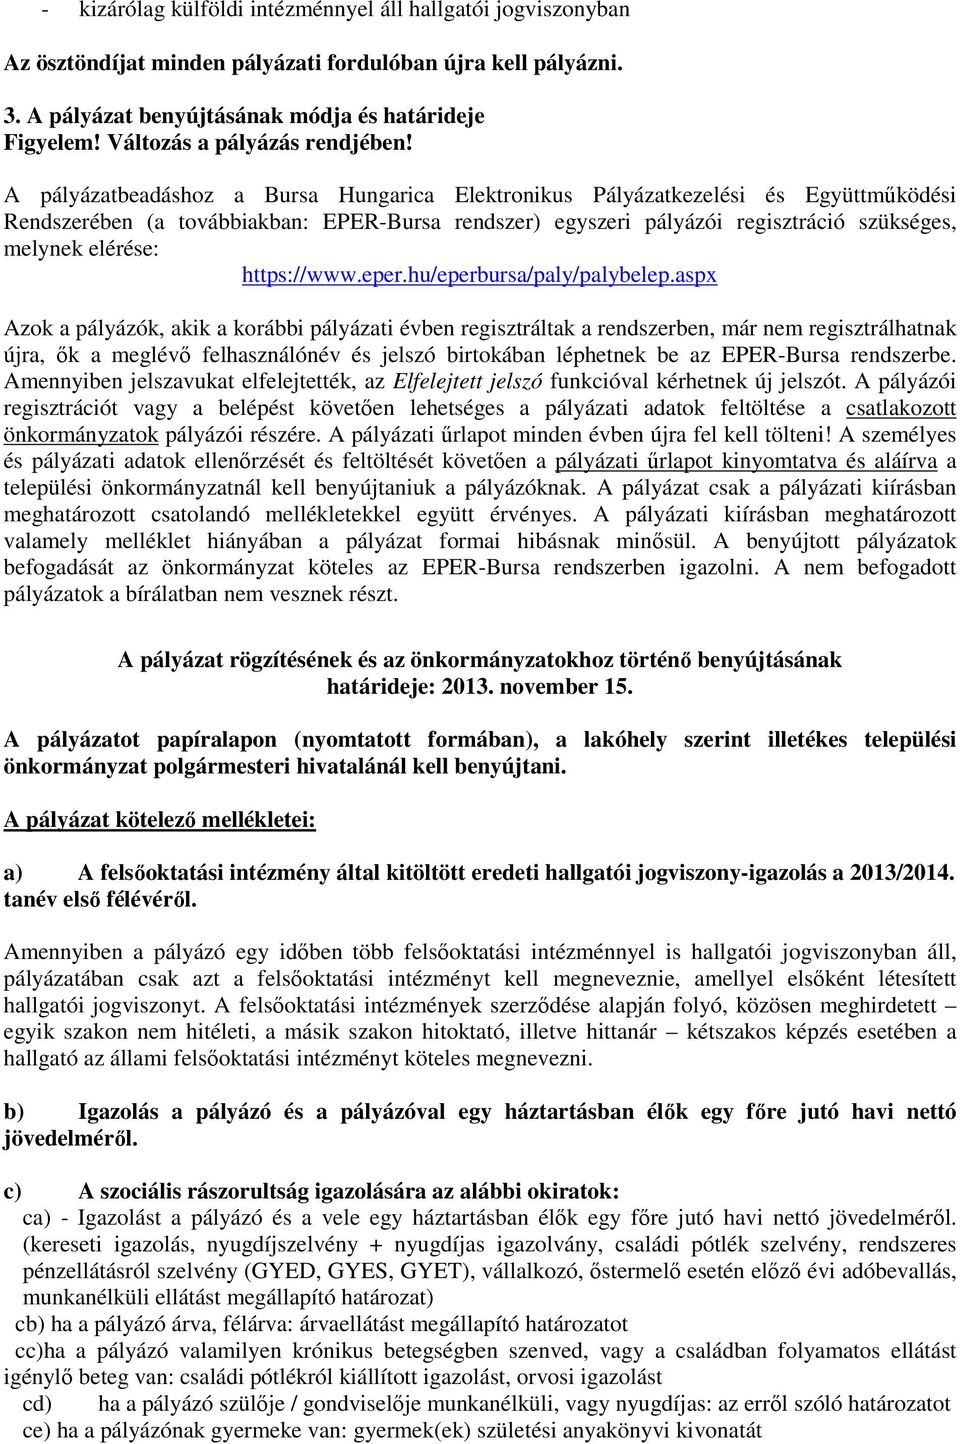 A pályázatbeadáshoz a Bursa Hungarica Elektronikus Pályázatkezelési és Együttműködési Rendszerében (a továbbiakban: EPER-Bursa rendszer) egyszeri pályázói regisztráció szükséges, melynek elérése: